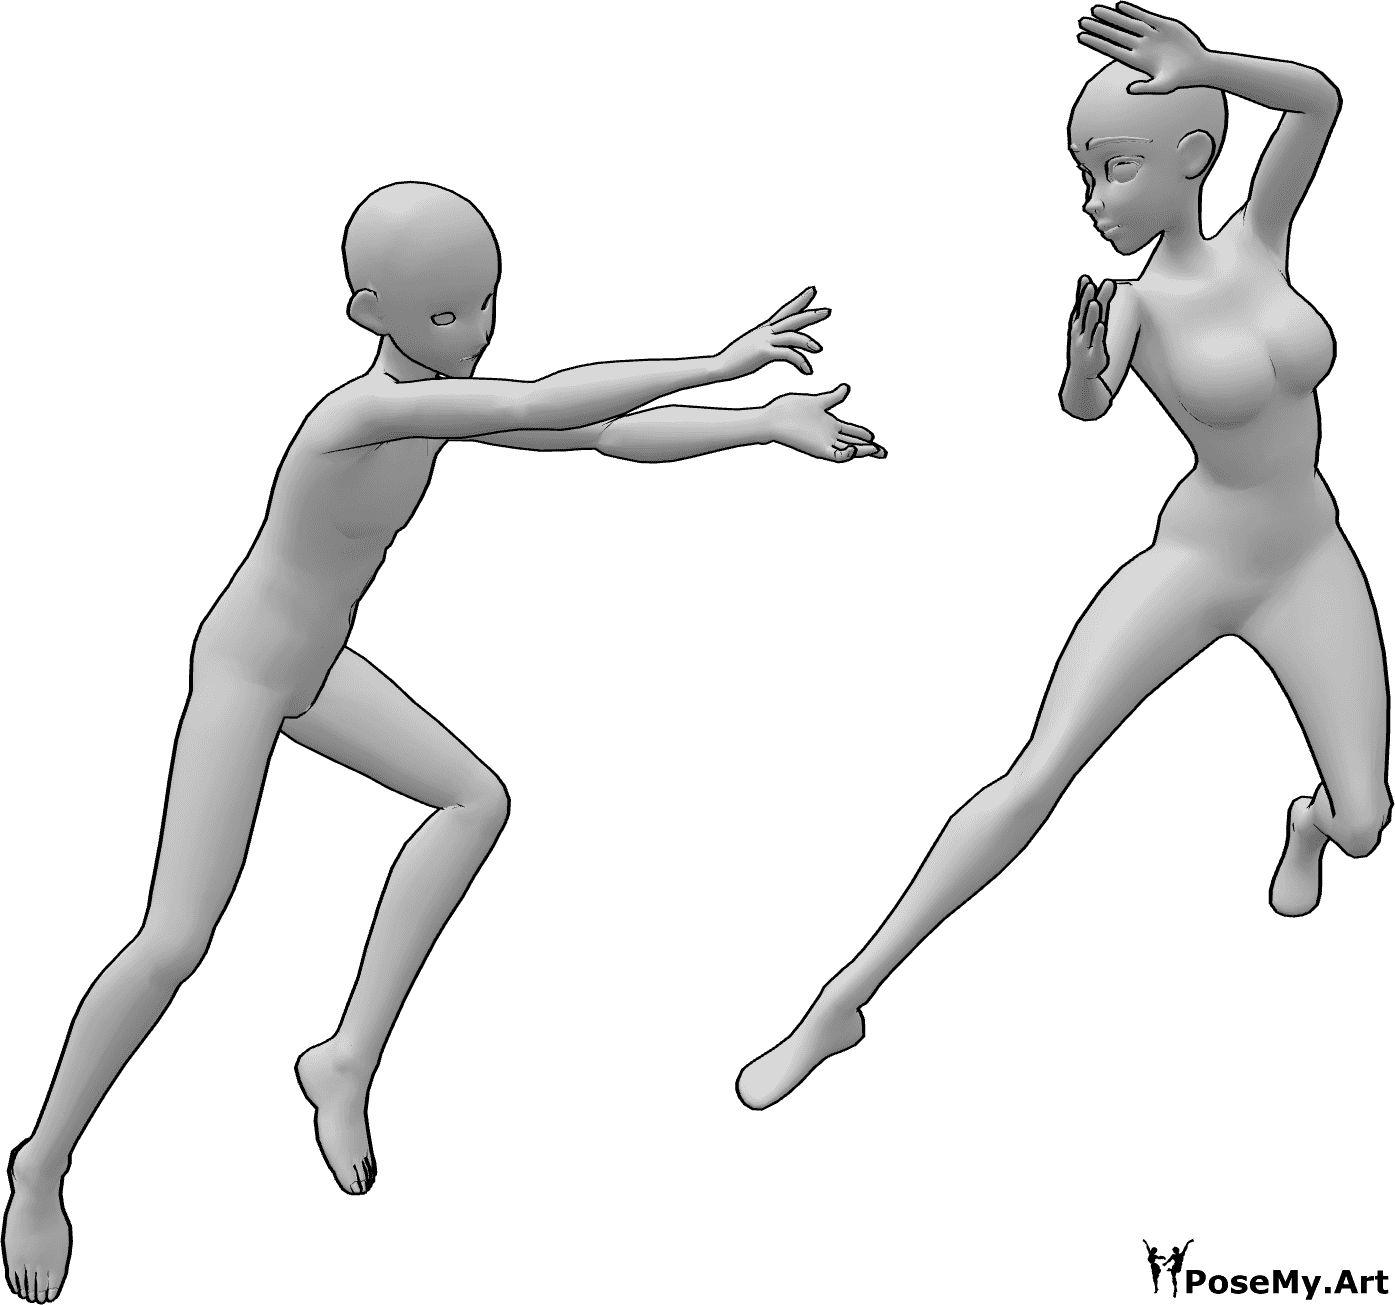 Referência de poses- Pose de luta de um duo de anime - Anime feminino e masculino numa luta de fantasia no ar com pose de poderes mágicos